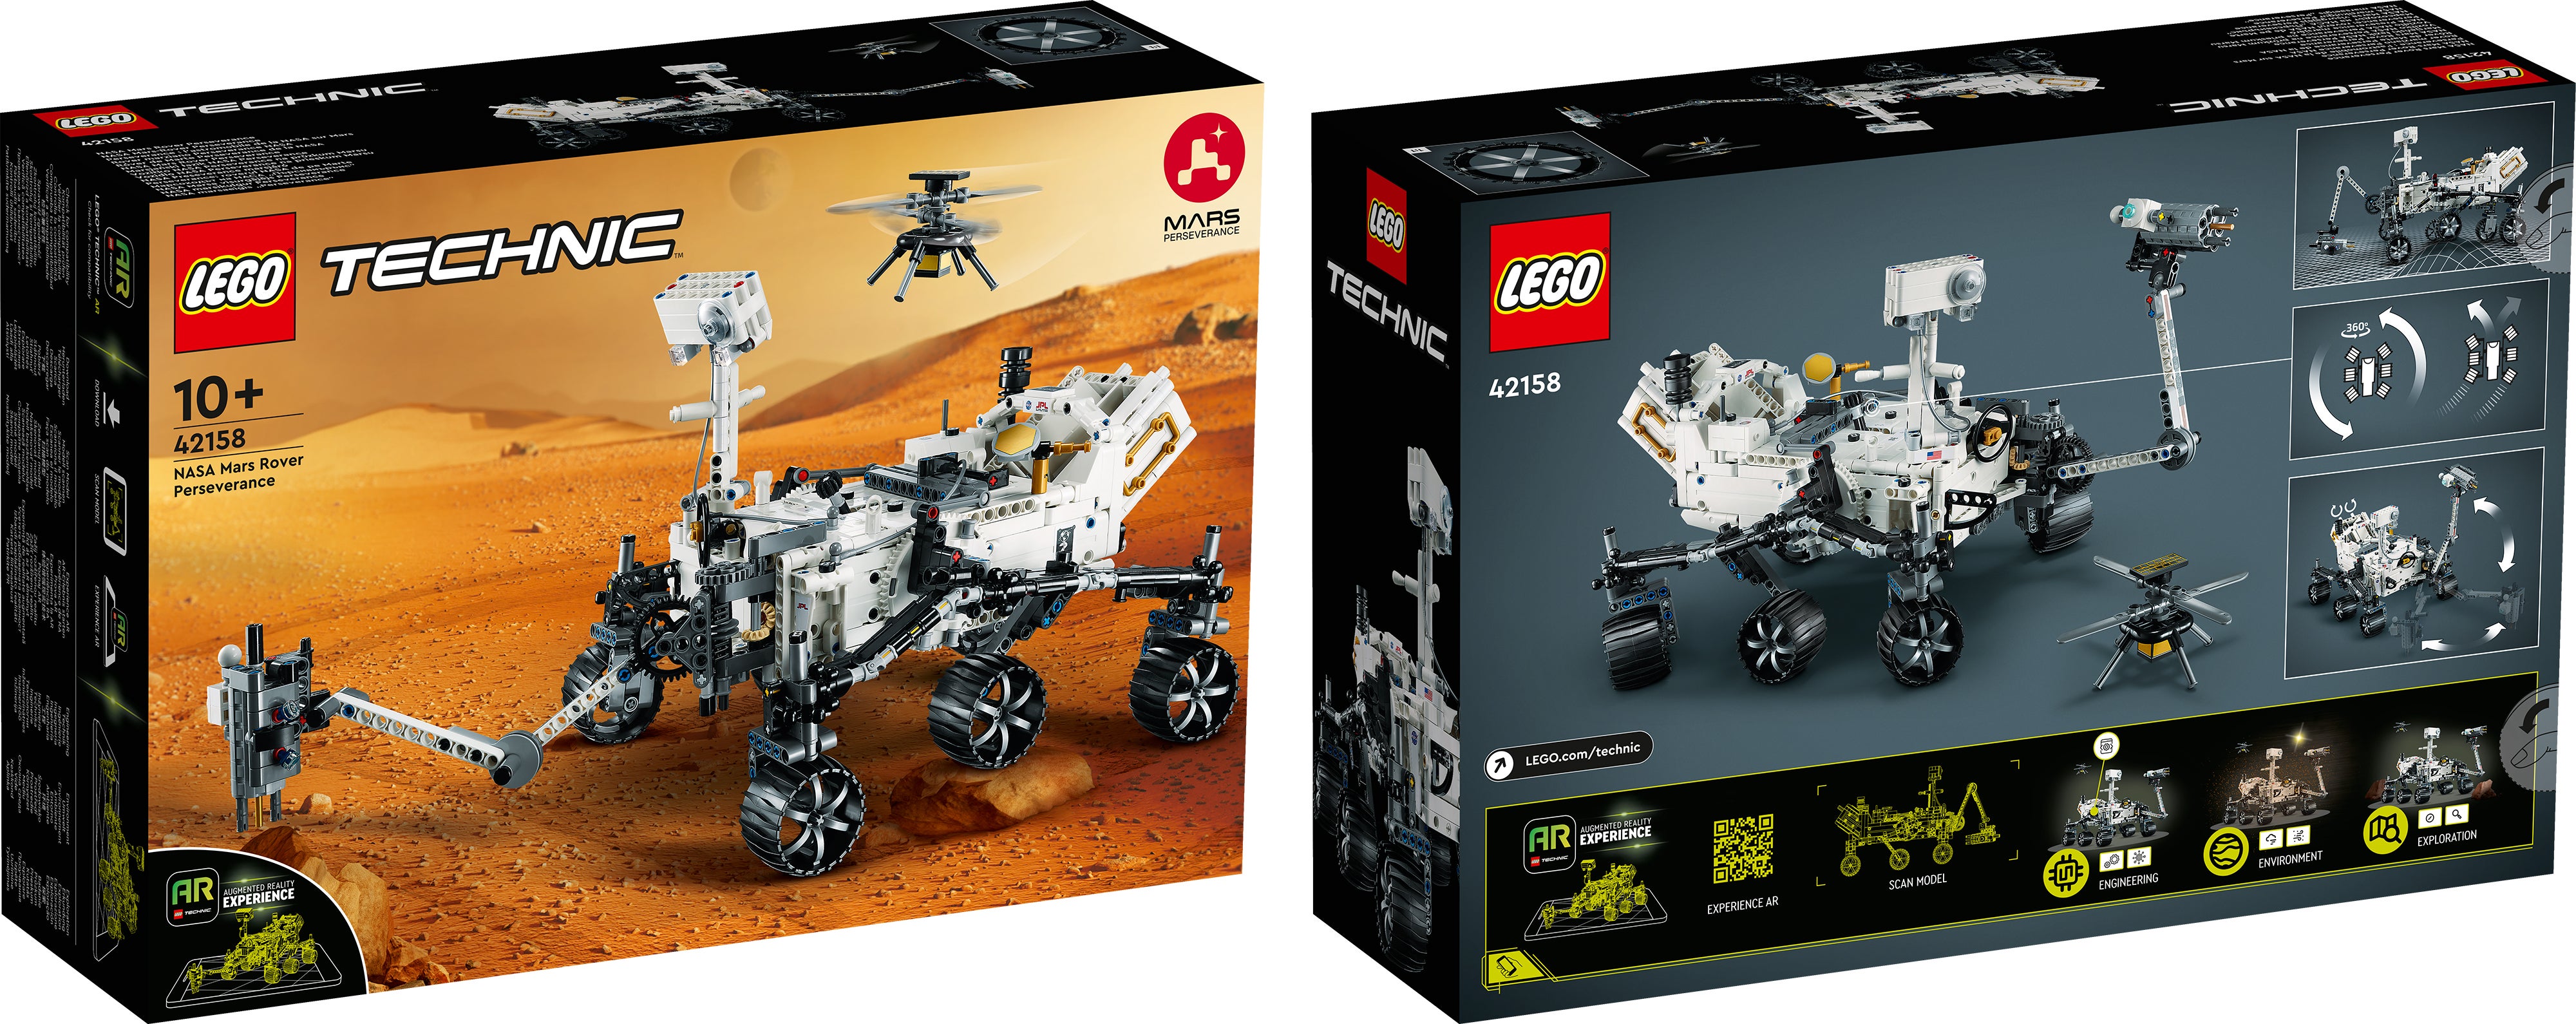 الجزء الأمامي والخلفي من عبوة نموذج Lego Mars Rover المثابرة.